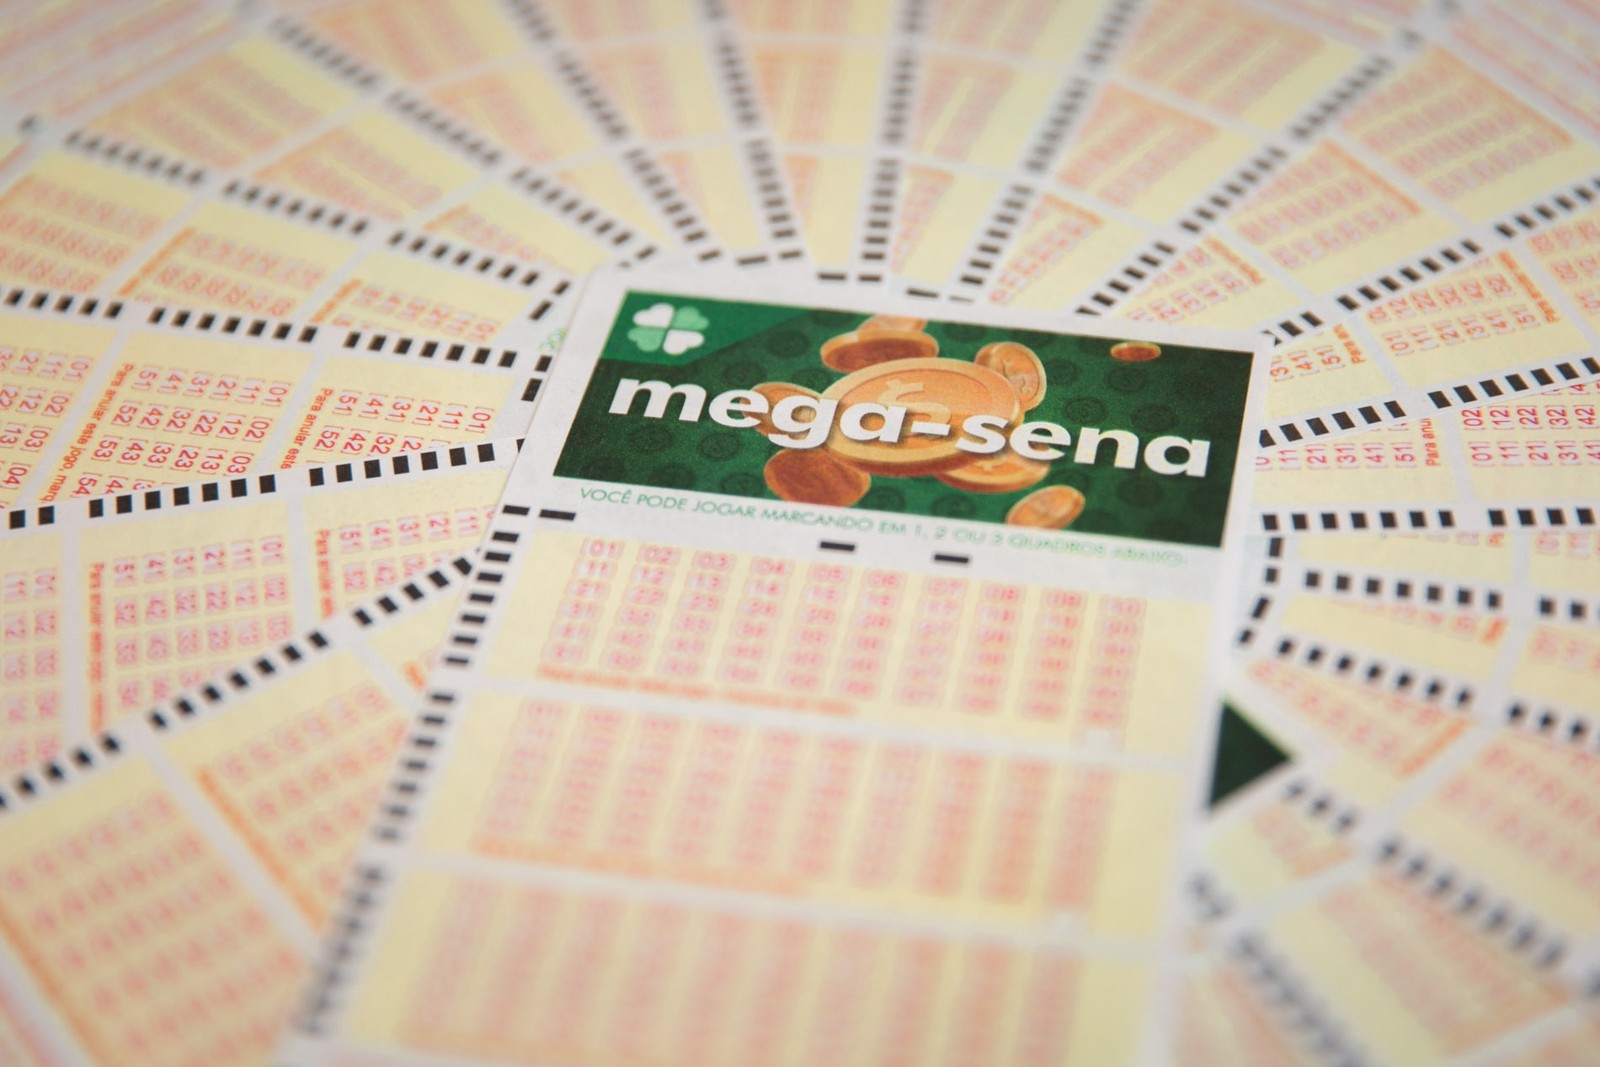 Mega-Sena pode pagar R$ 9 milhões nesta quarta-feira